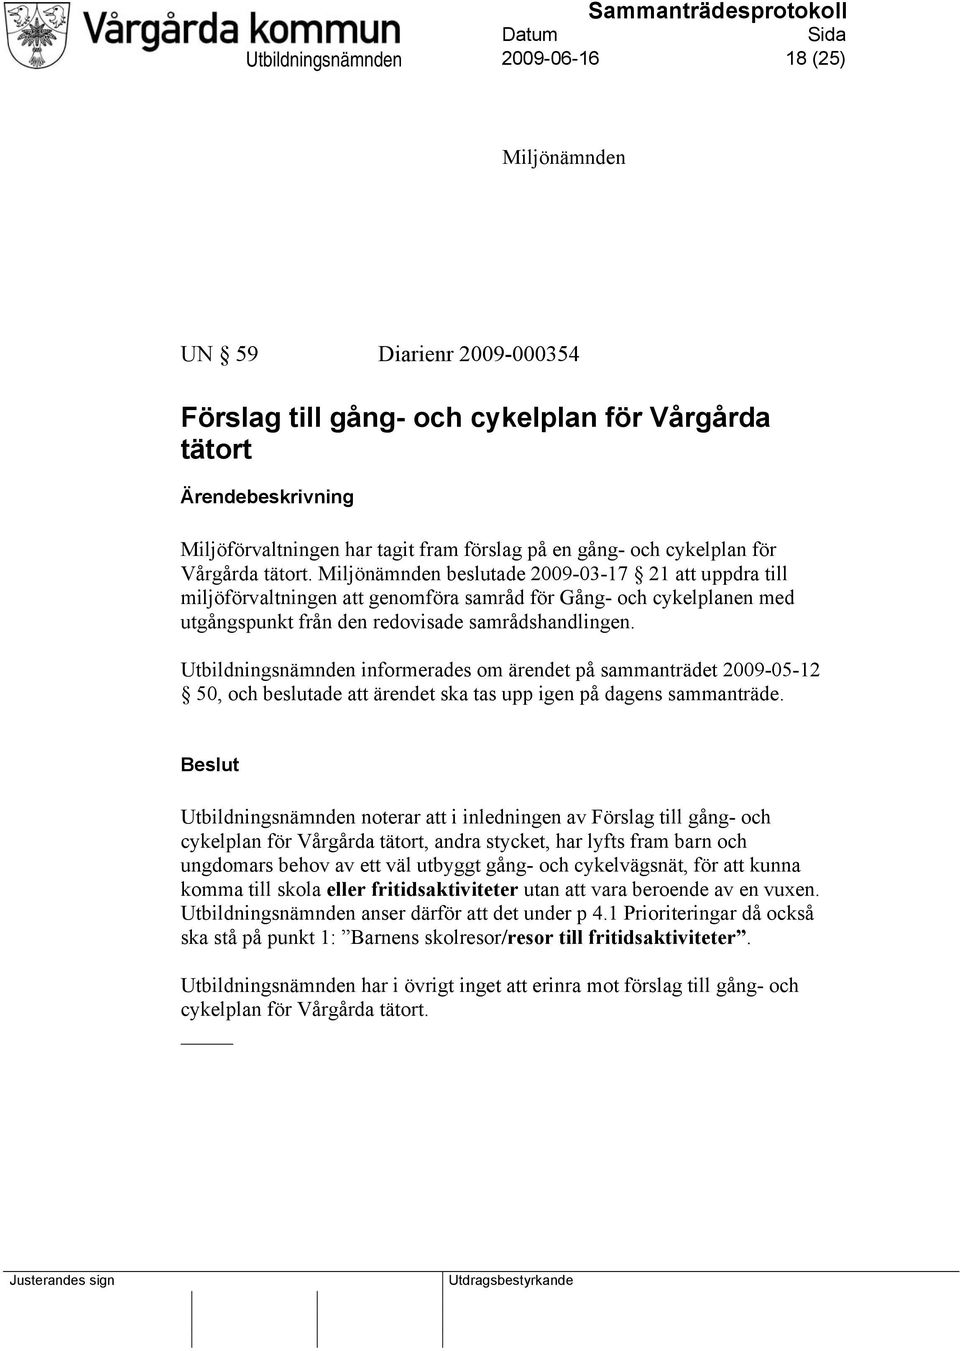 Miljönämnden beslutade 2009-03-17 21 att uppdra till miljöförvaltningen att genomföra samråd för Gång- och cykelplanen med utgångspunkt från den redovisade samrådshandlingen.